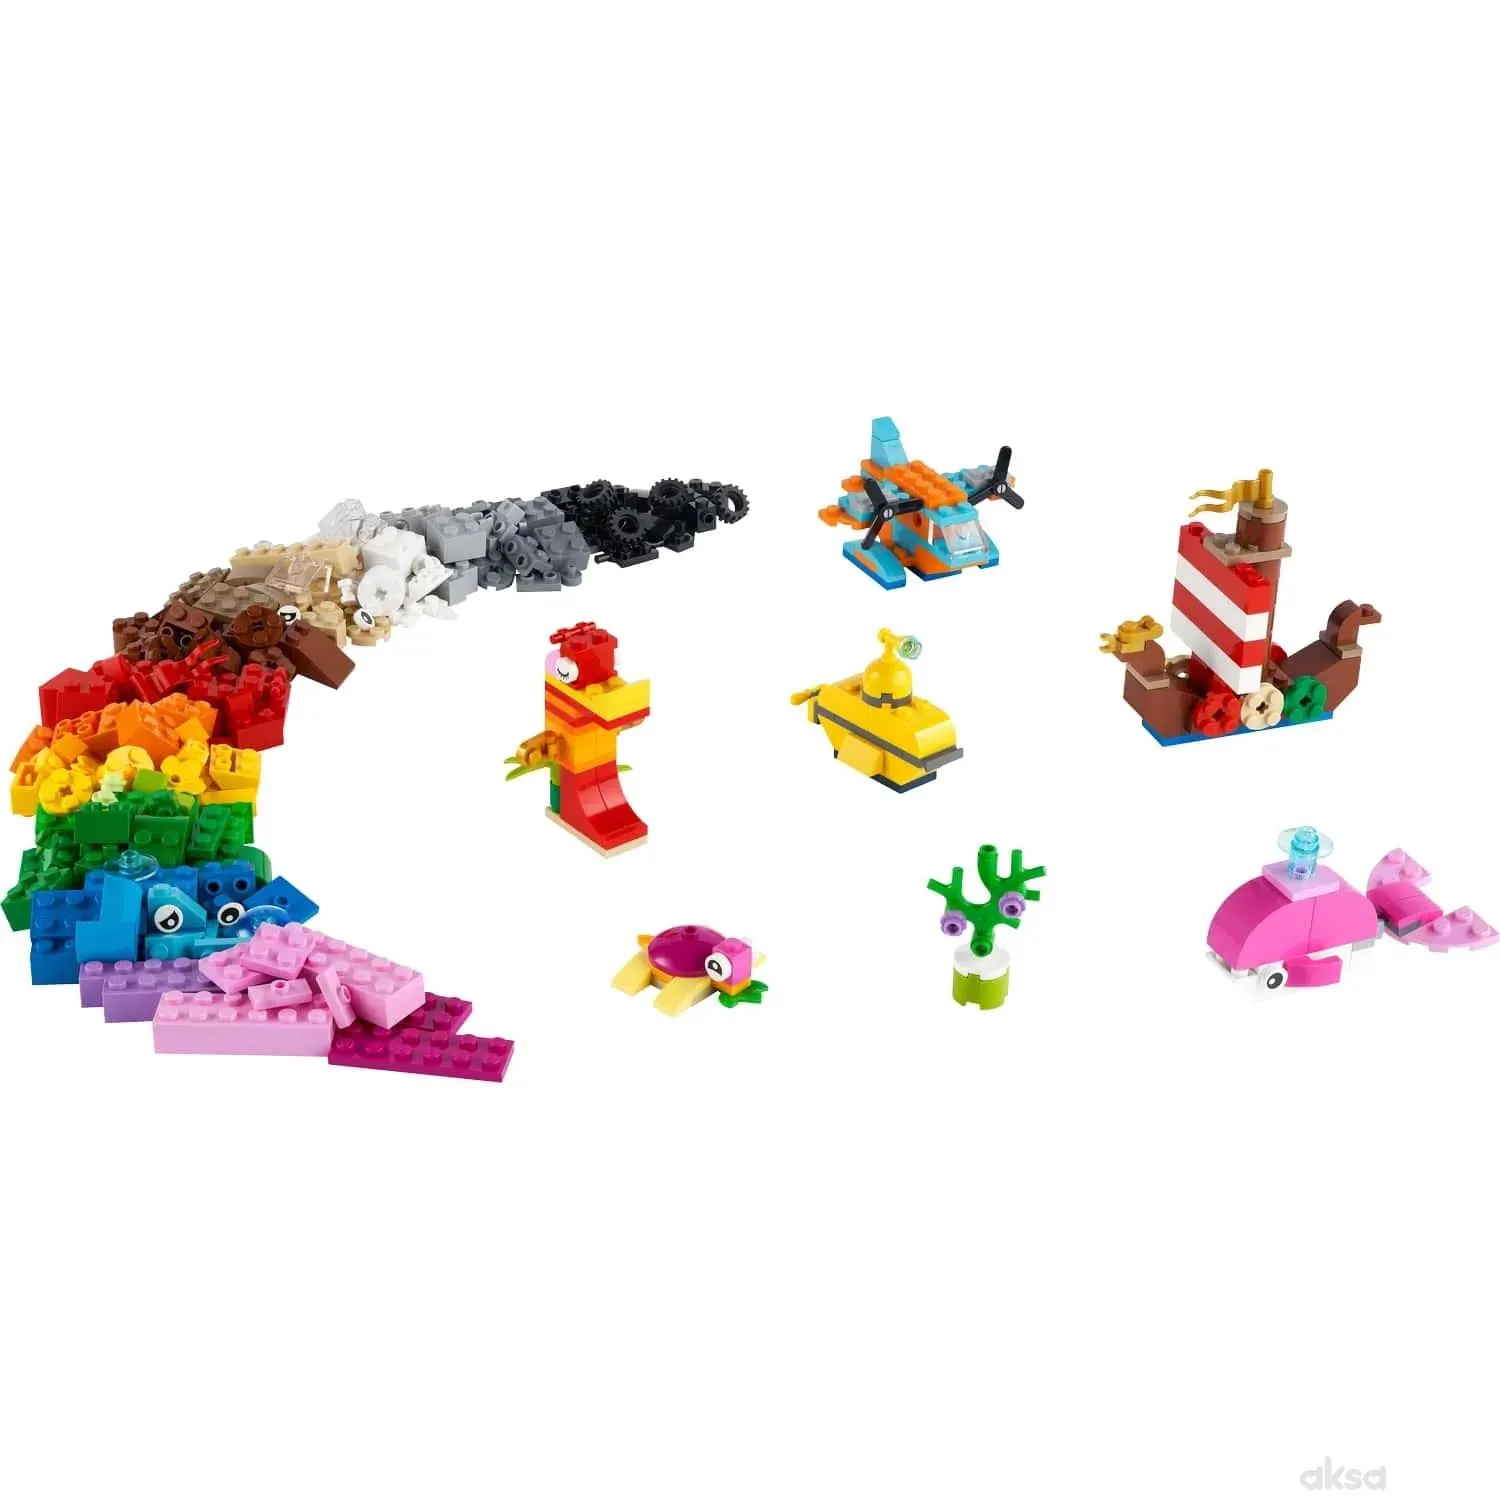 Lego Kreativna oceanska zabava 